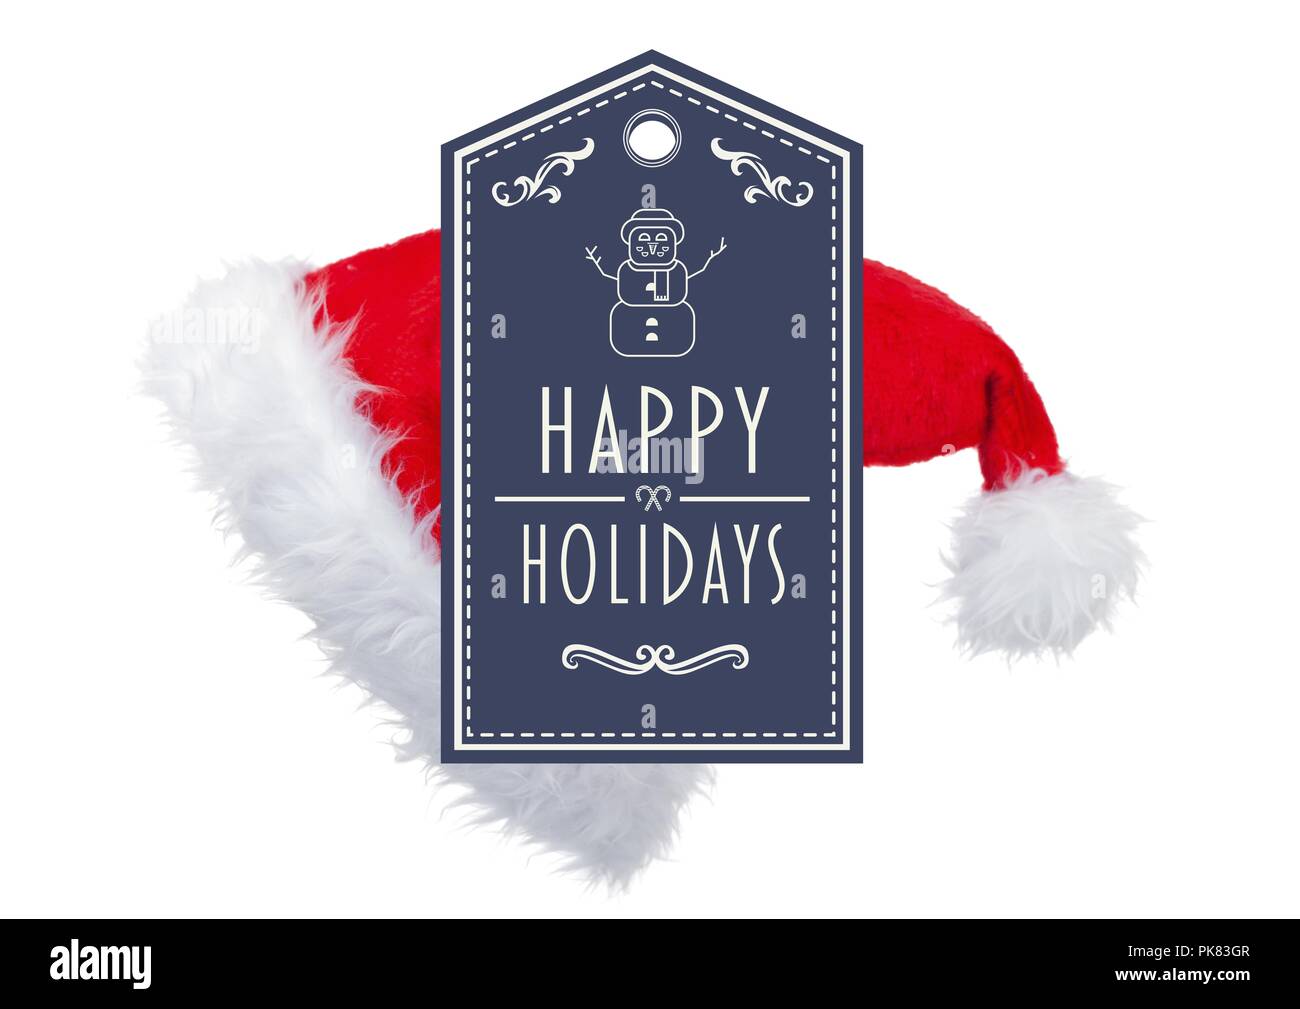 Happy Holidays text with Santa hat Stock Photo